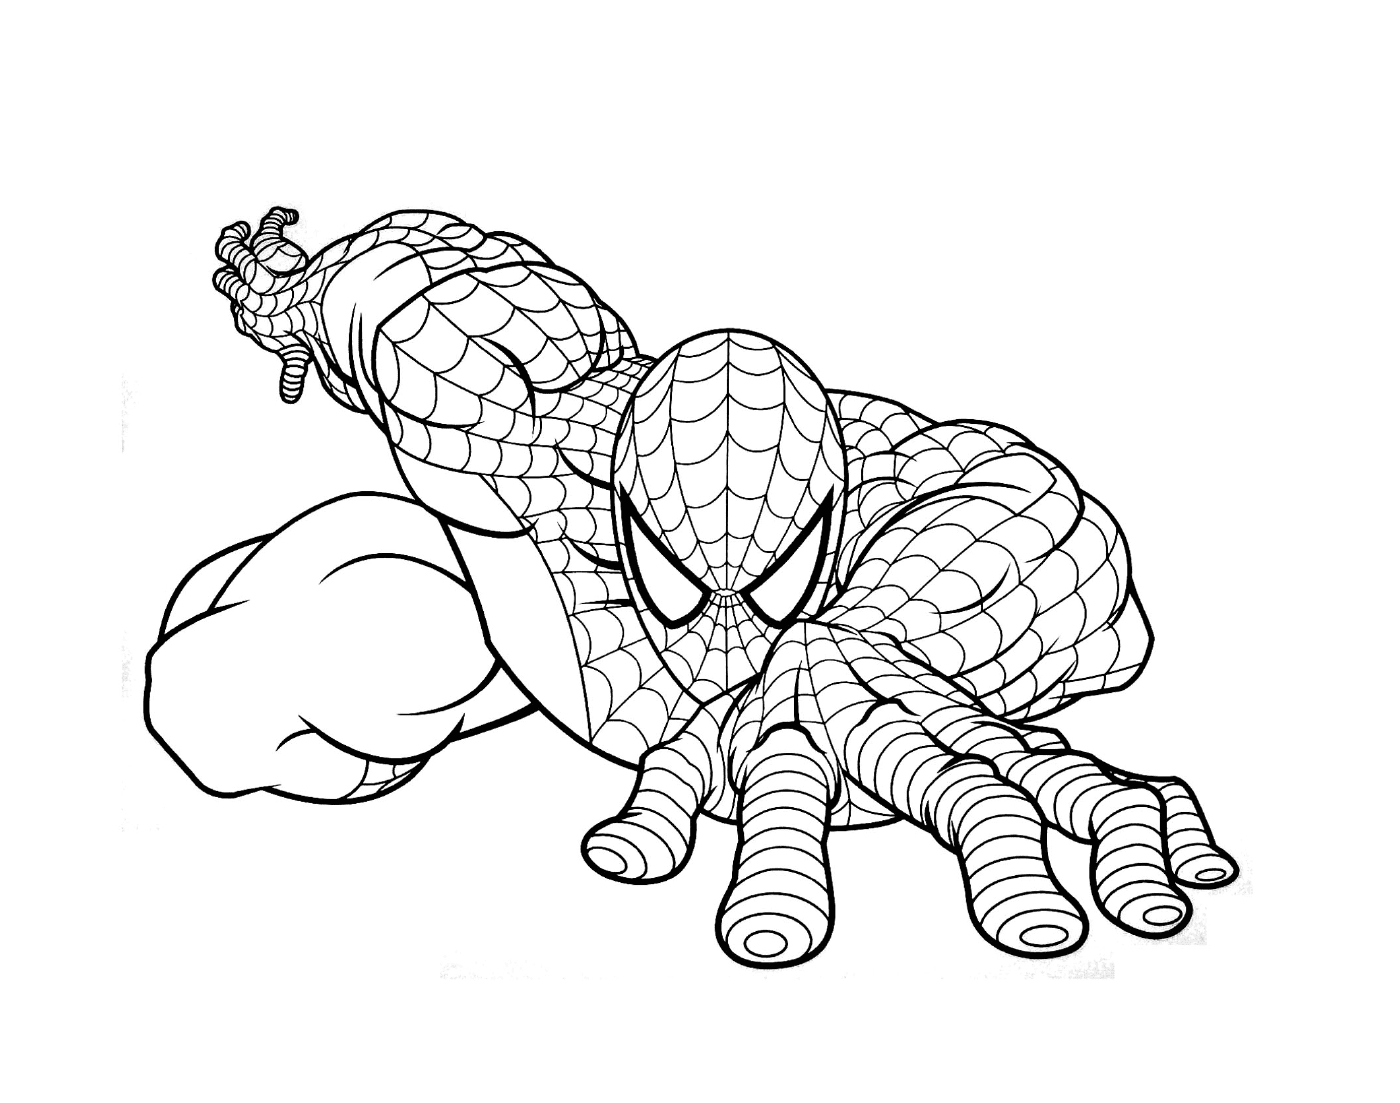   Spiderman représenté en dessin 